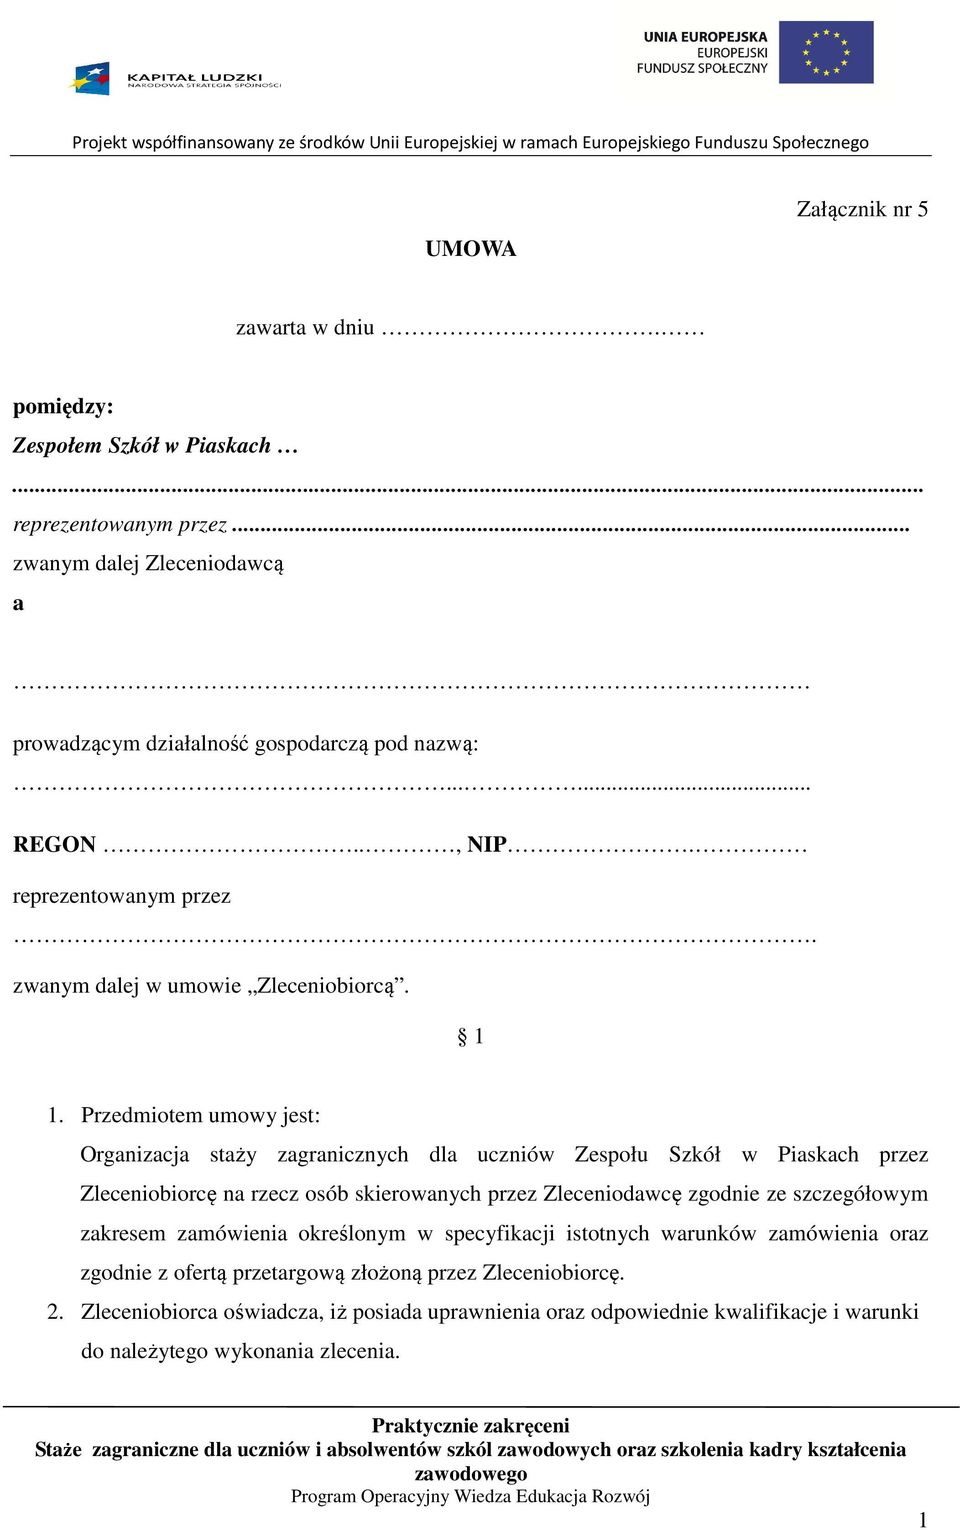 Przedmiotem umowy jest: Organizacja staży zagranicznych dla uczniów Zespołu Szkół w Piaskach przez Zleceniobiorcę na rzecz osób skierowanych przez Zleceniodawcę zgodnie ze